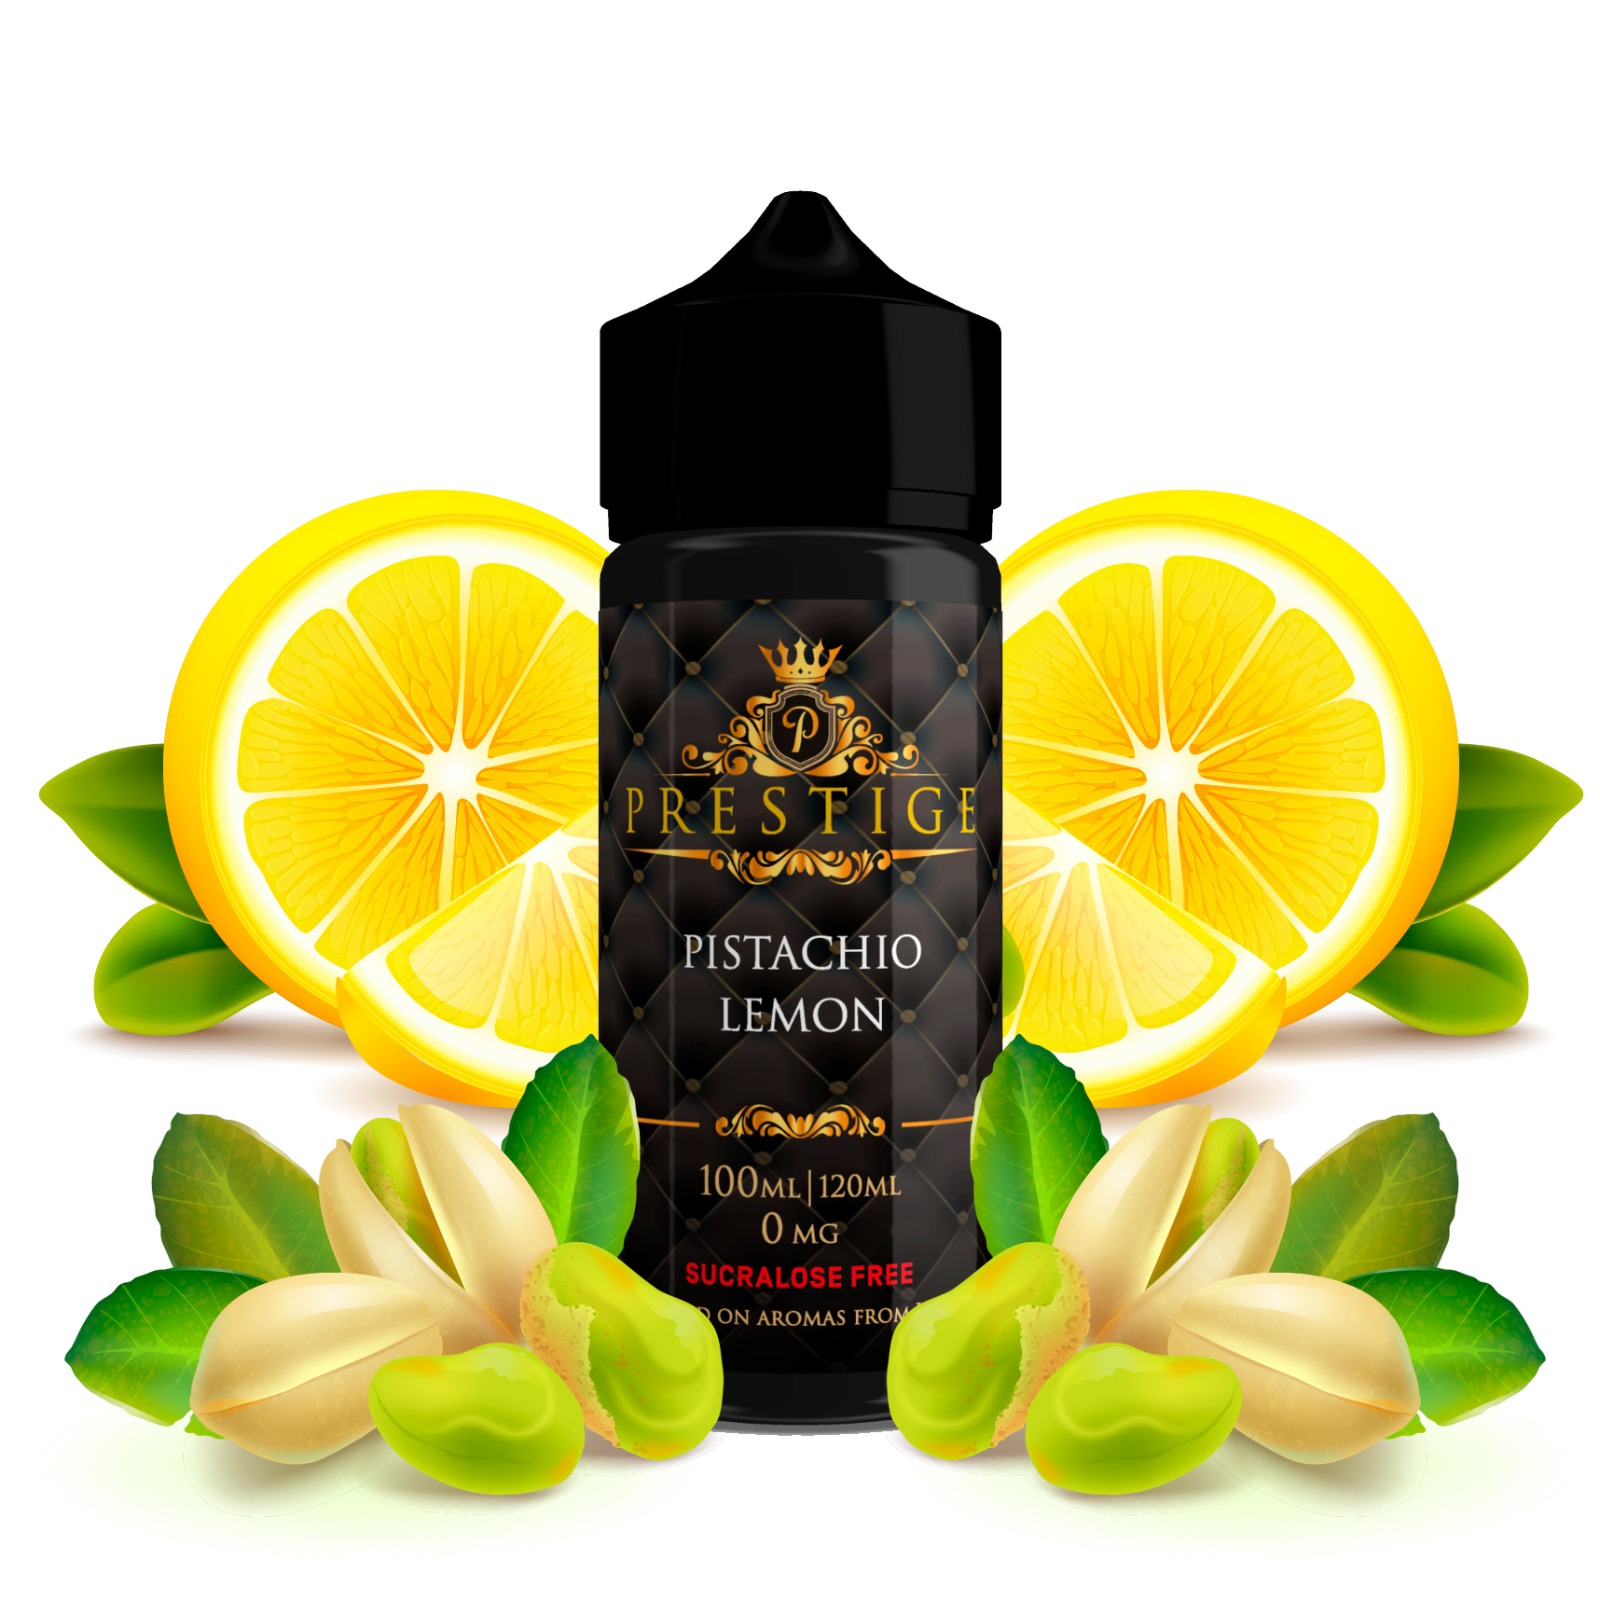 Prestige pisachio lemon 100 ml